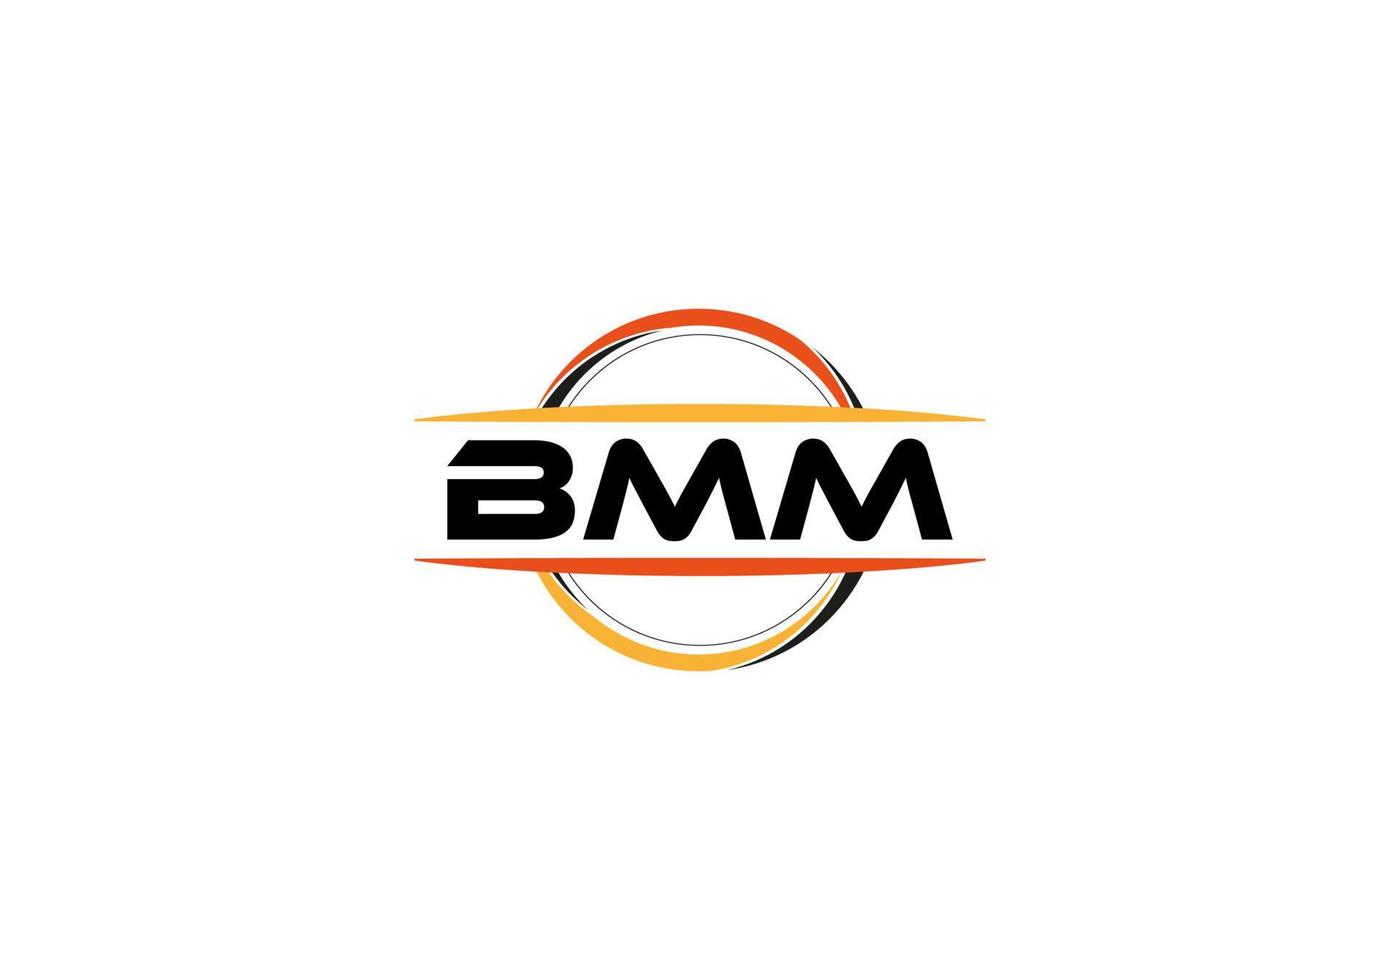 bmm carta realeza elipse forma logotipo. bmm escova arte logotipo. bmm logotipo para uma empresa, negócios, e comercial usar. vetor